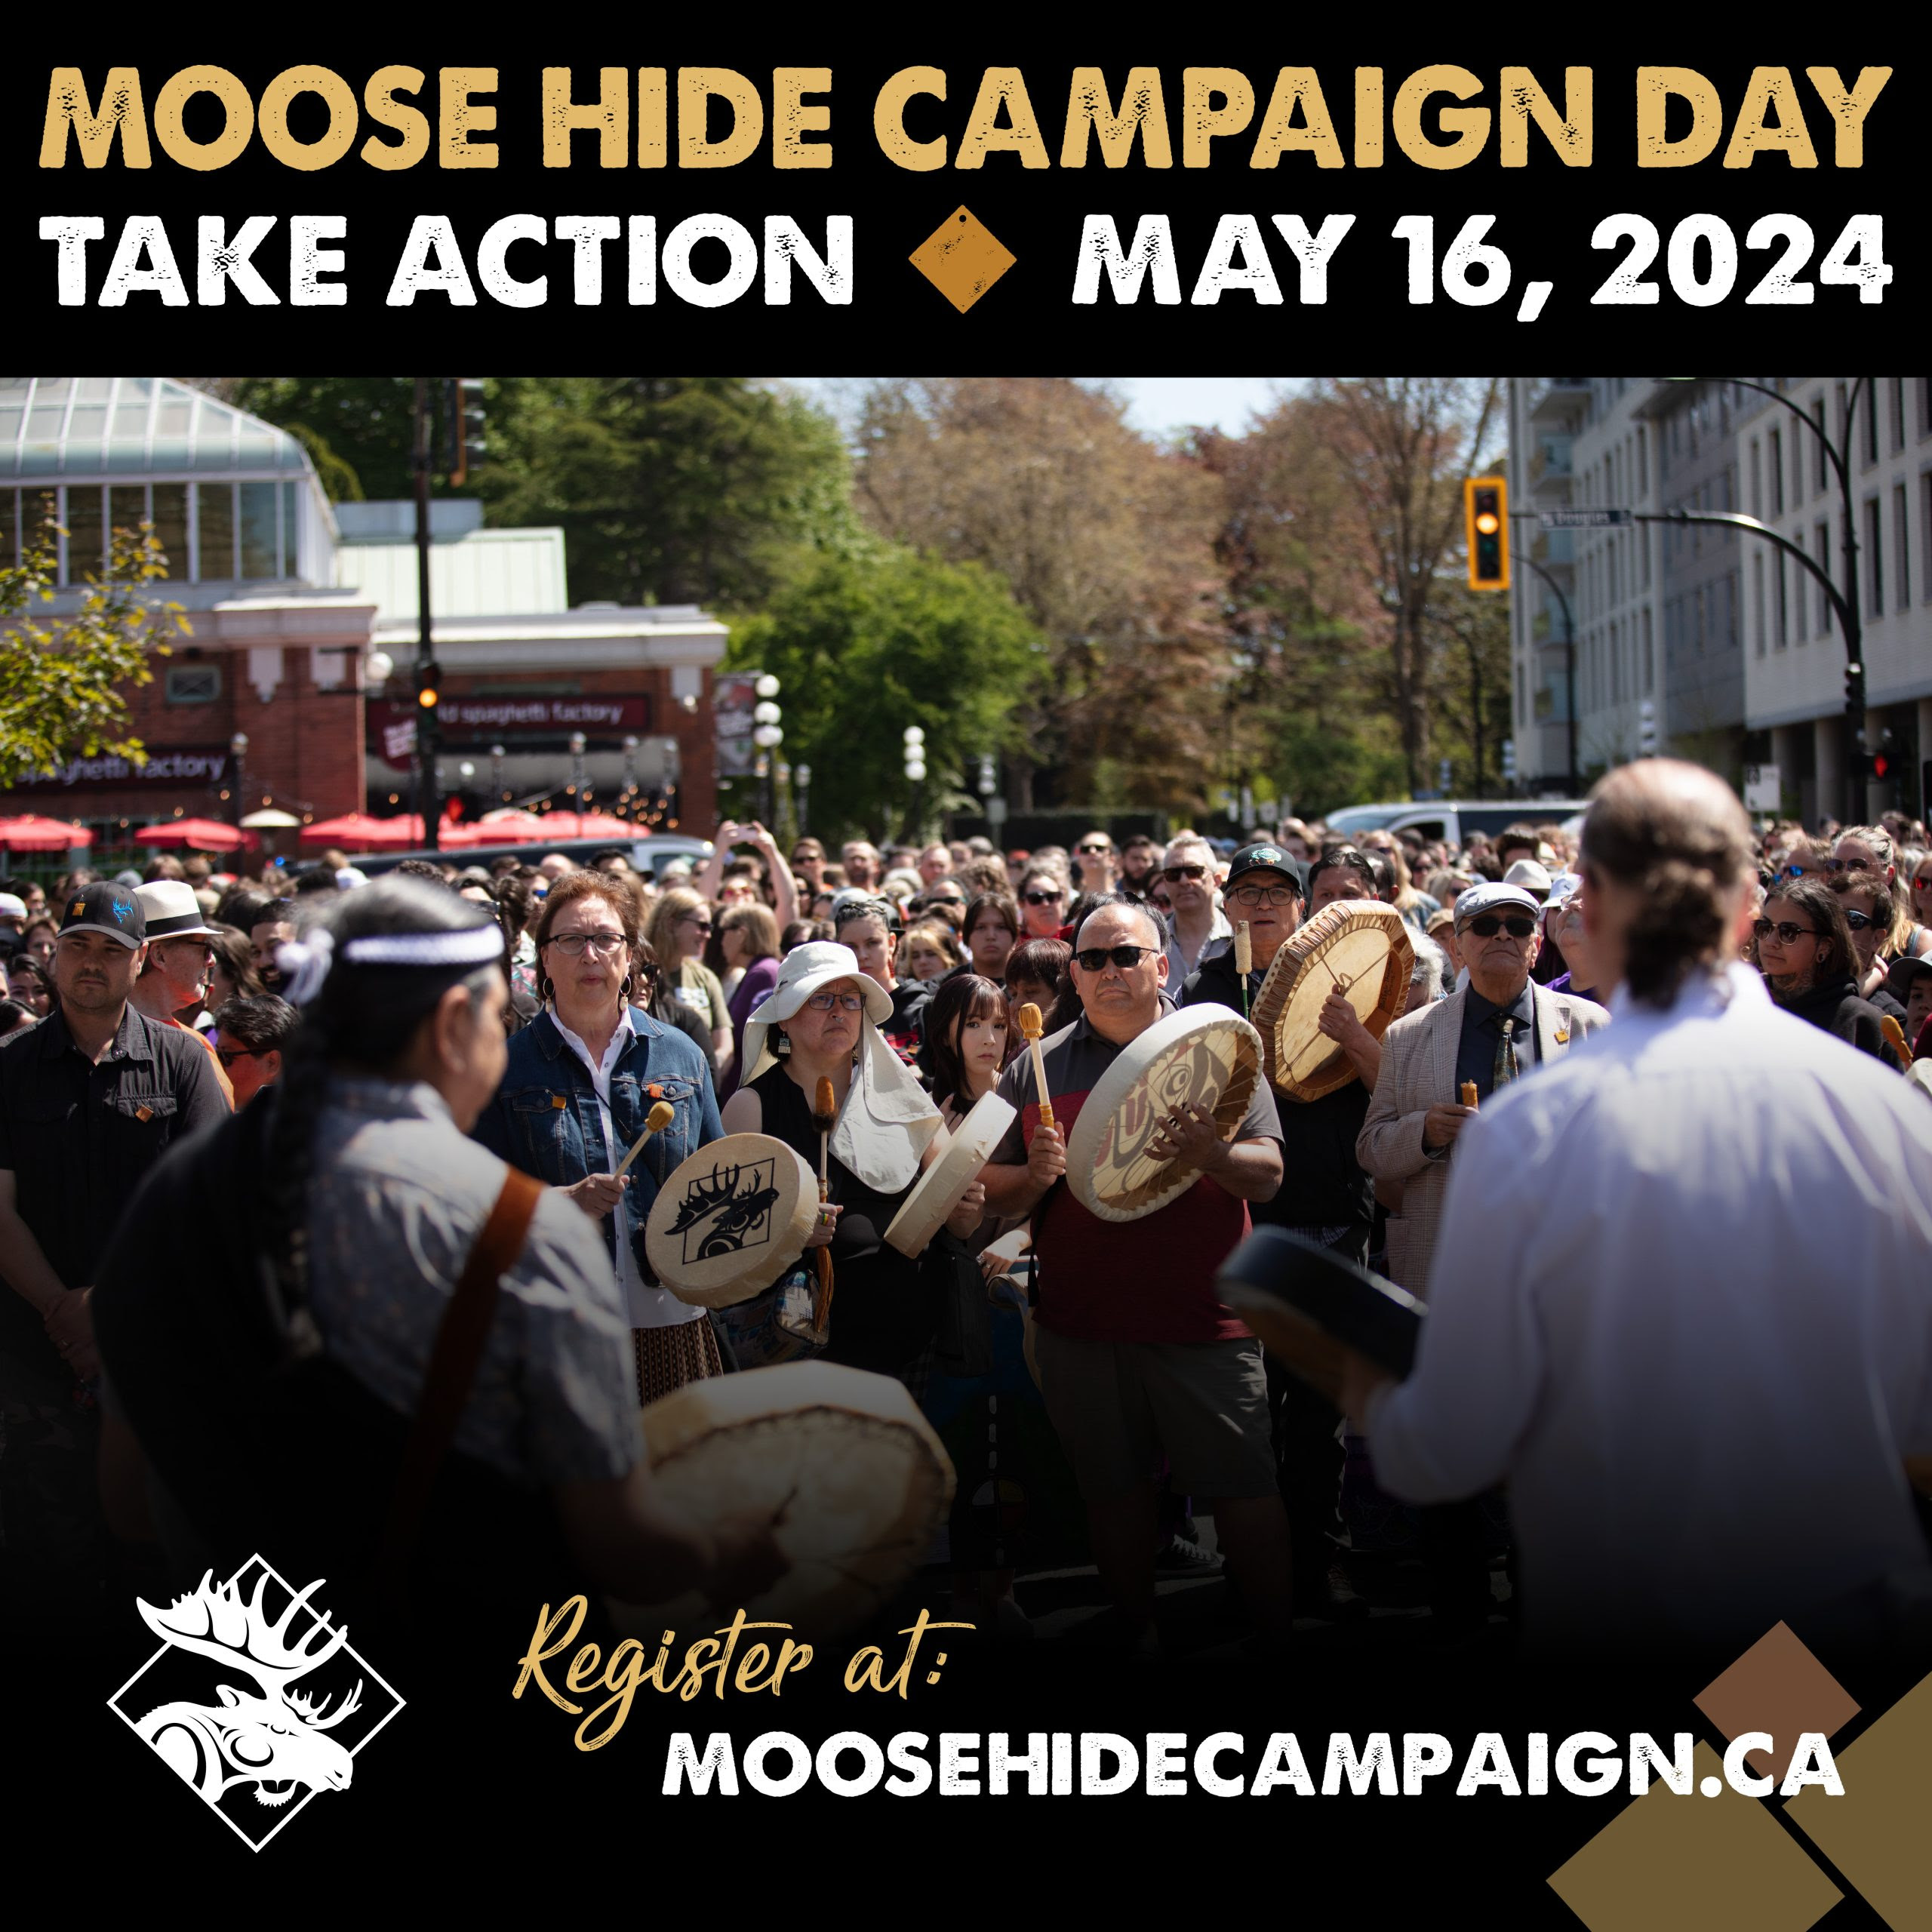 Moose Hide Campaign, May 16, 2024